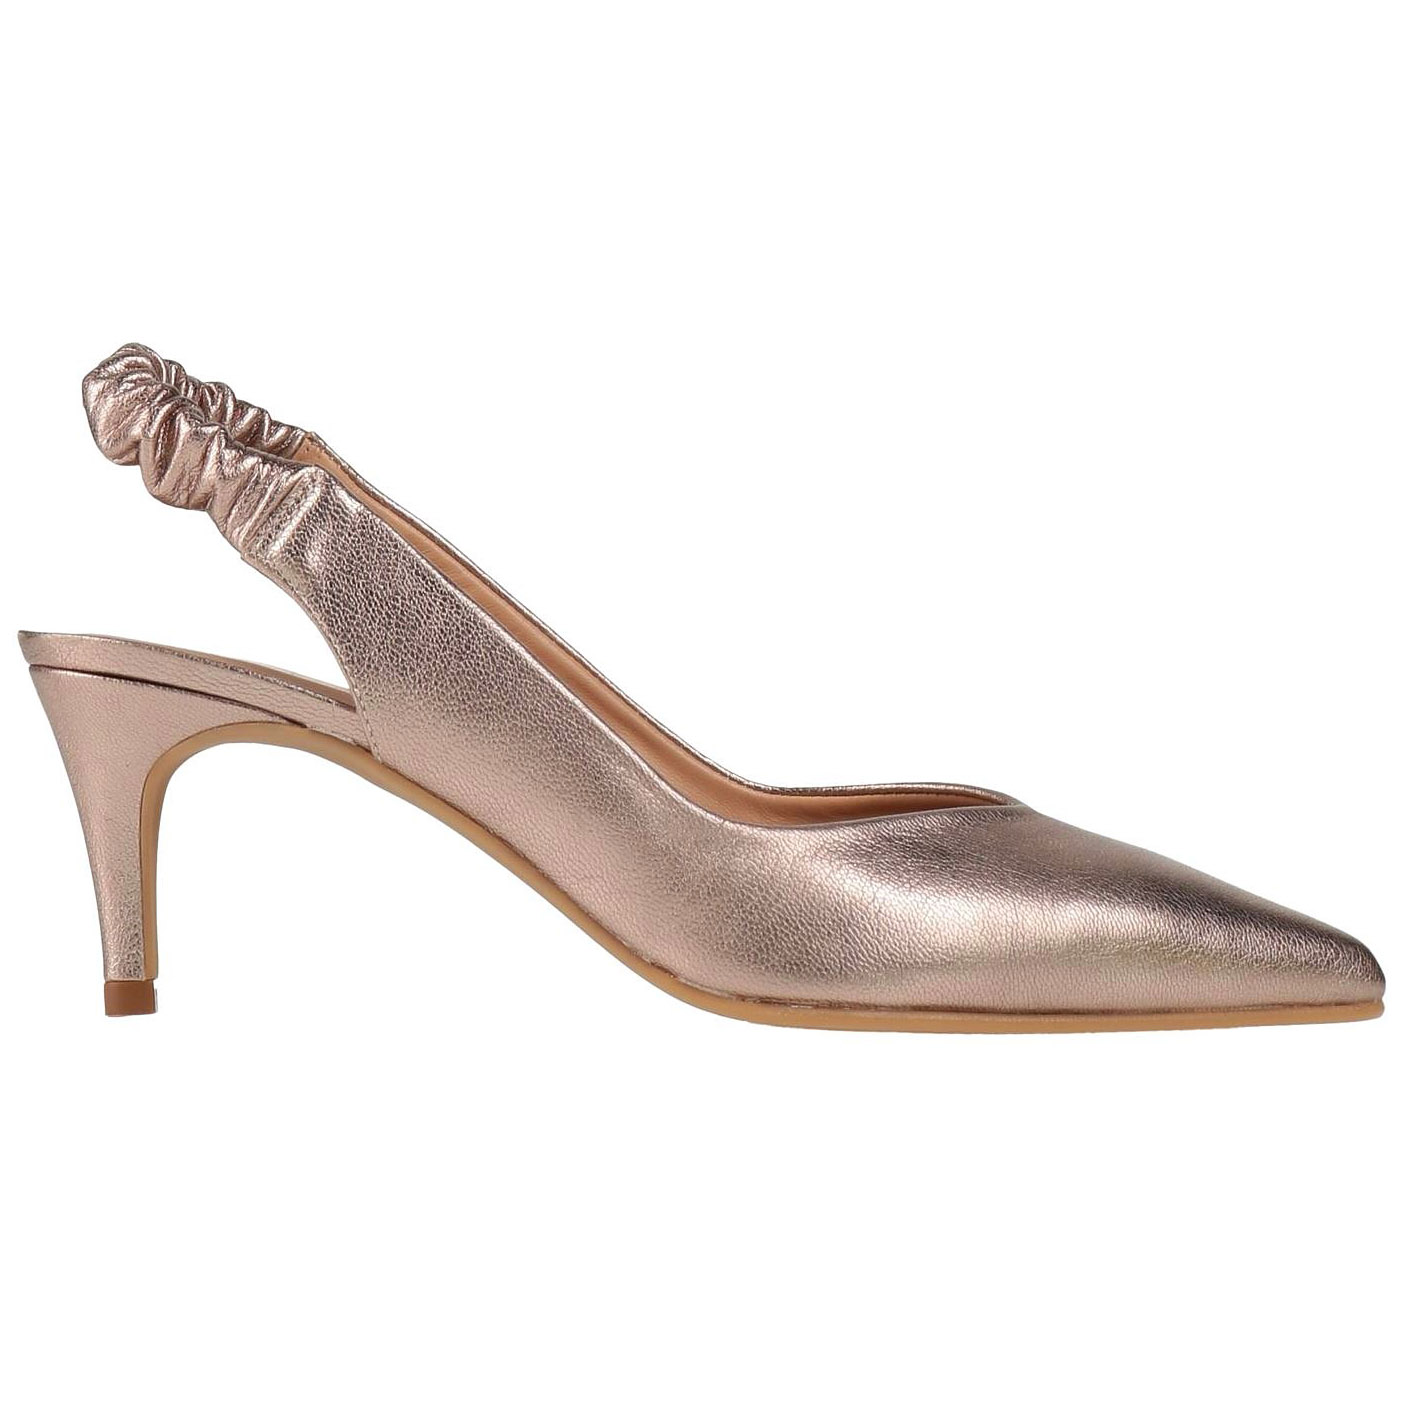 Туфли Daniele Ancarani, сиренево-платиновый туфли женские кожаные на толстом каблуке с бисером на квадратном каблуке